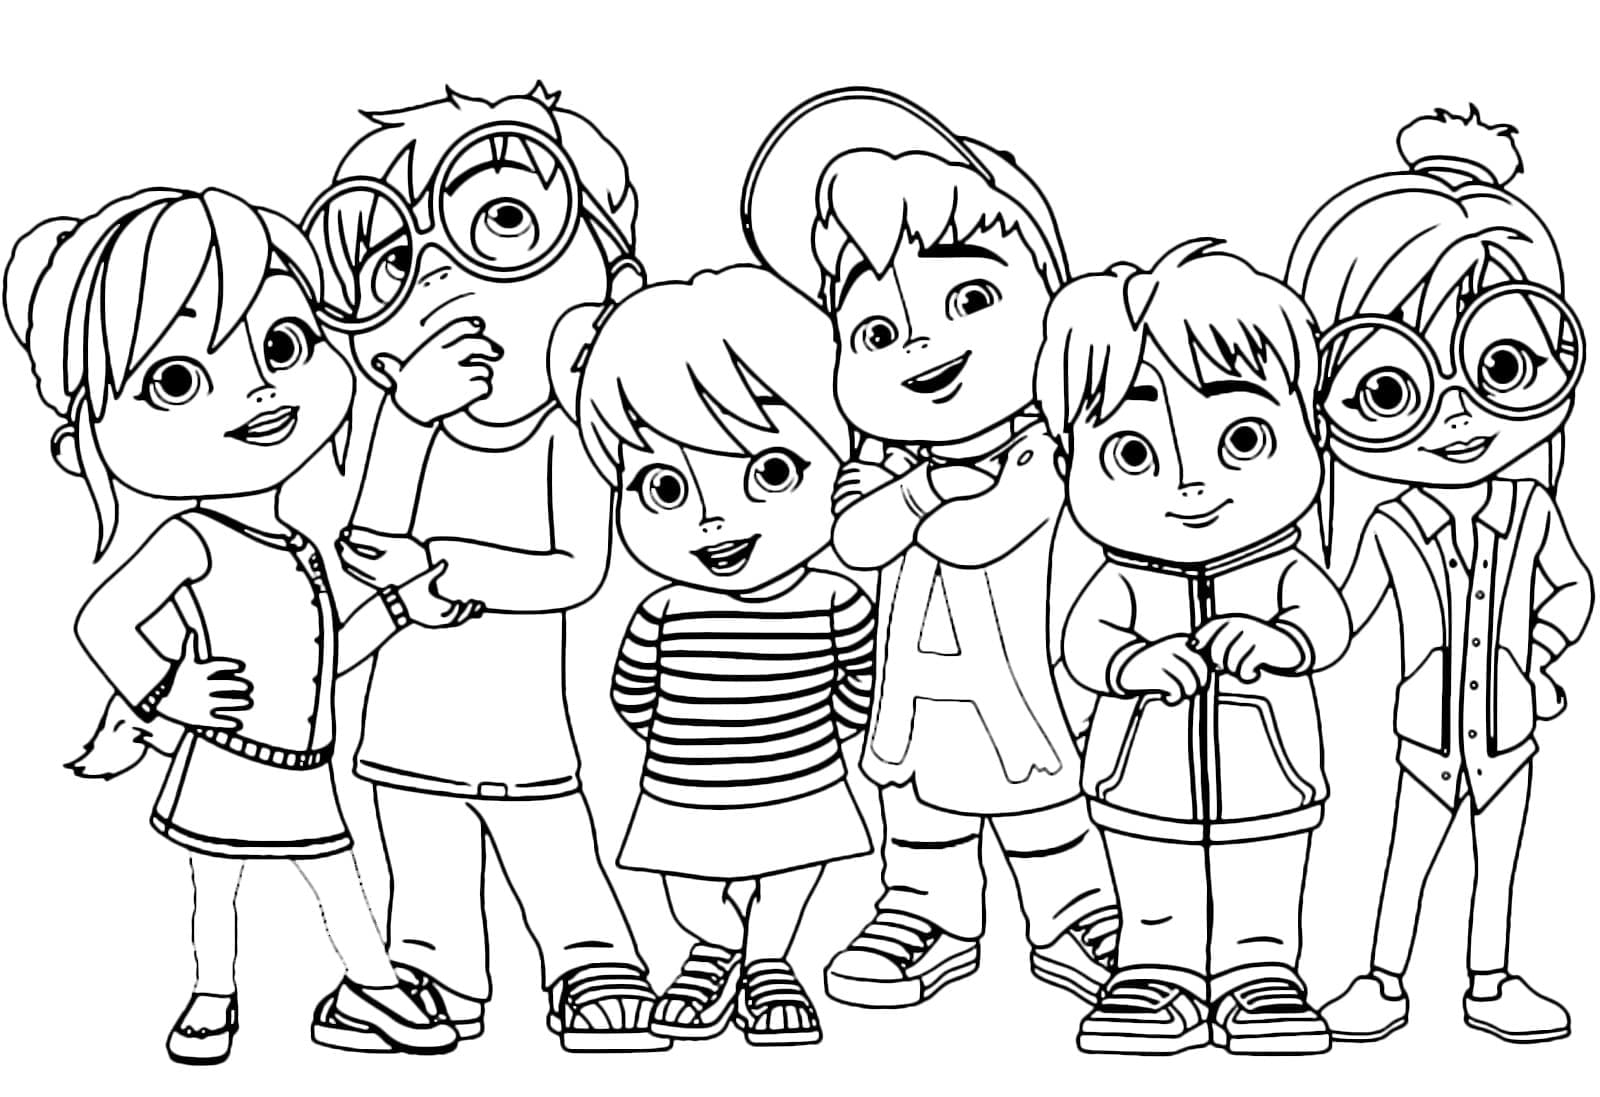 Personnages de Alvin et les Chipmunks coloring page